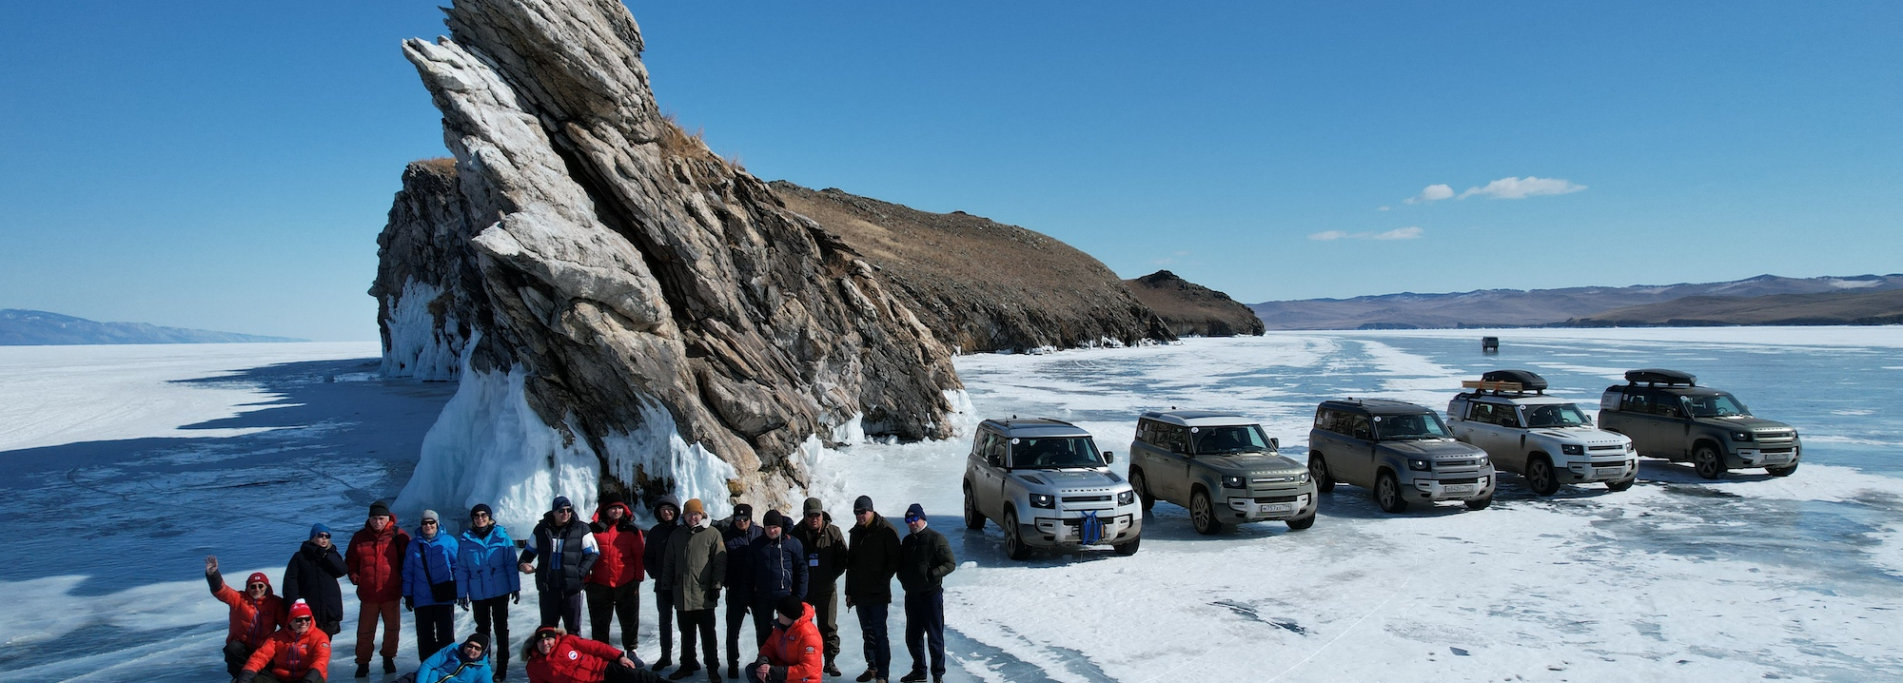 Лед Байкала - Невероятное зимнее путешествие в России